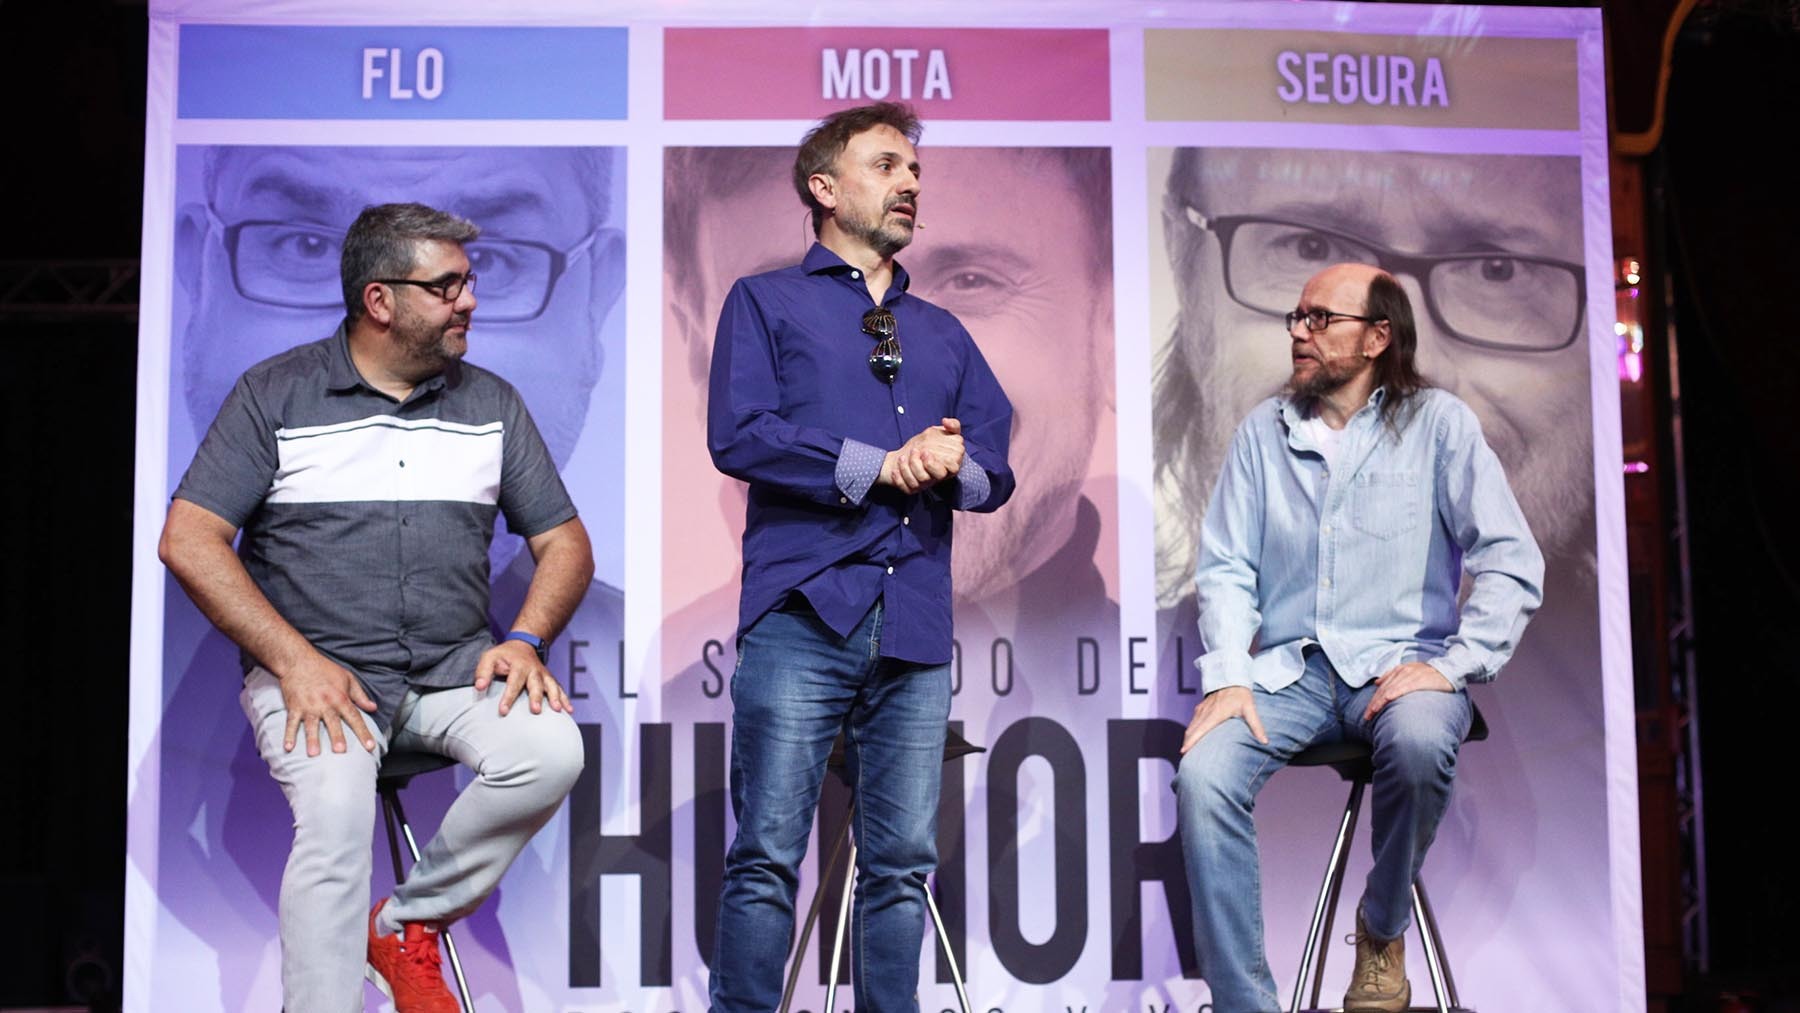 Los humoristas José Mota, Santiago Segura y Flo, juntos en Pamplona por un motivo especial